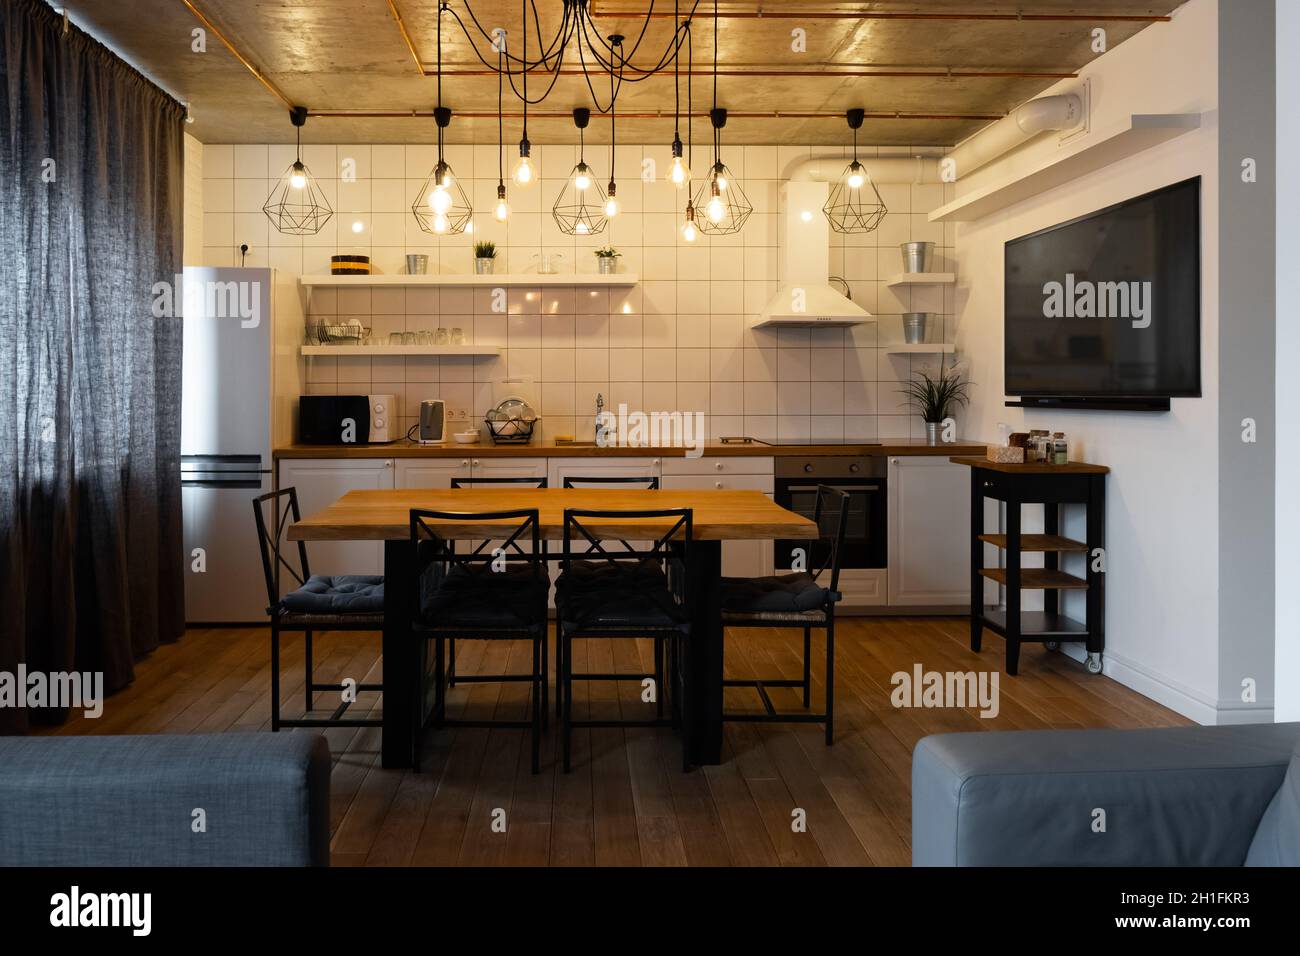 Un diseño interior de cocina comedor en estilo escandinavo moderno con una  gran mesa de madera y sillas contra pisos de madera clara, paredes y  muebles blancos brillantes Fotografía de stock -